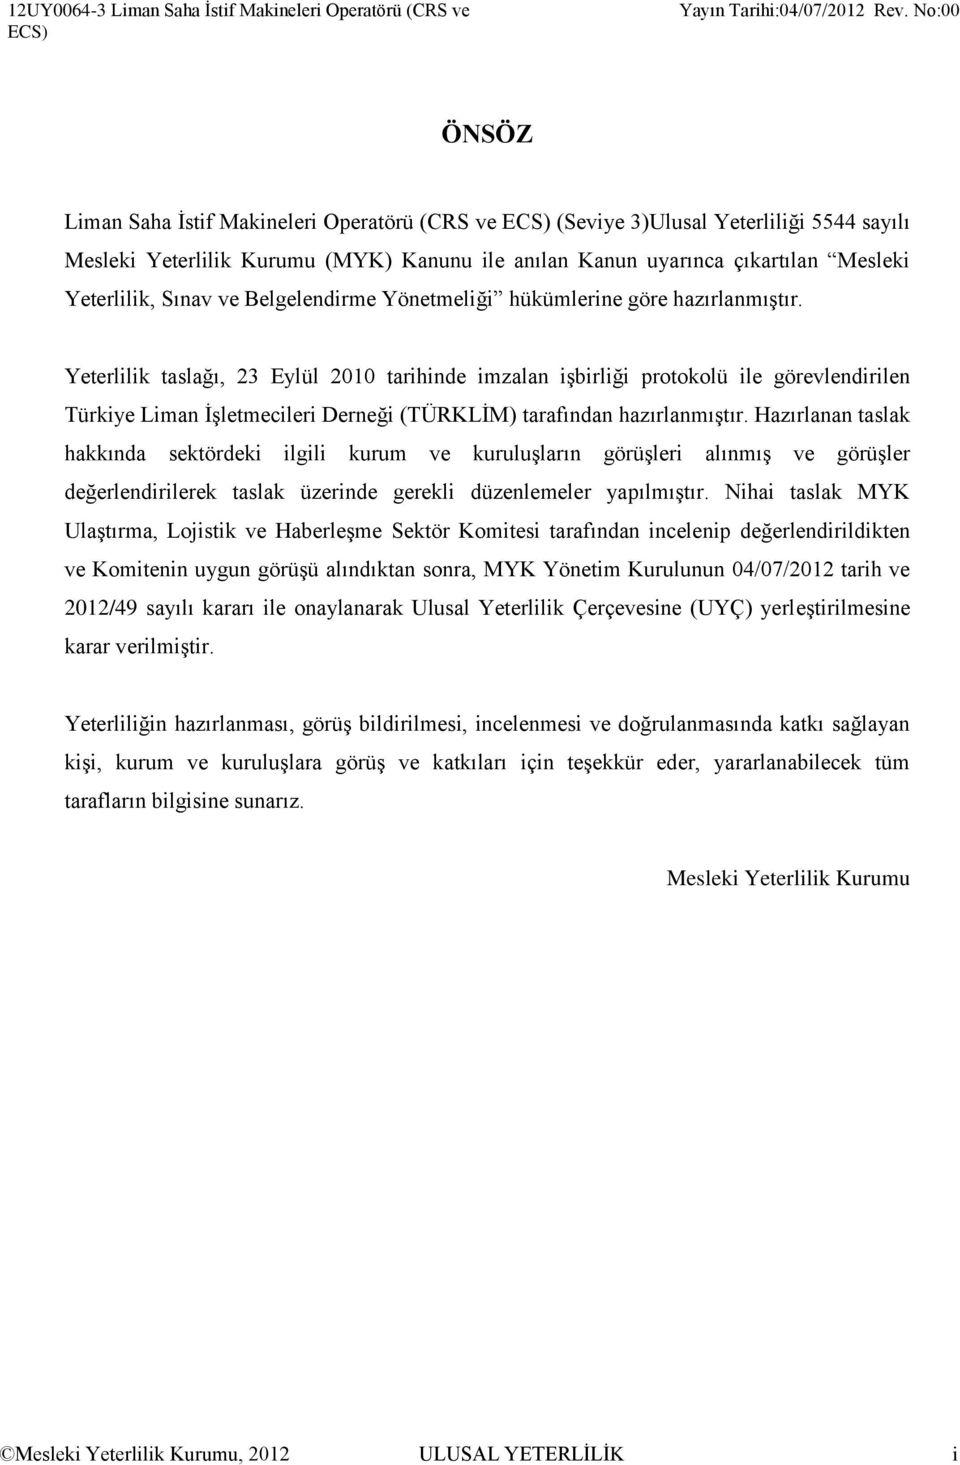 Yeterlilik taslağı, 23 Eylül 2010 tarihinde imzalan işbirliği protokolü ile görevlendirilen Türkiye Liman İşletmecileri Derneği (TÜRKLİM) tarafından hazırlanmıştır.